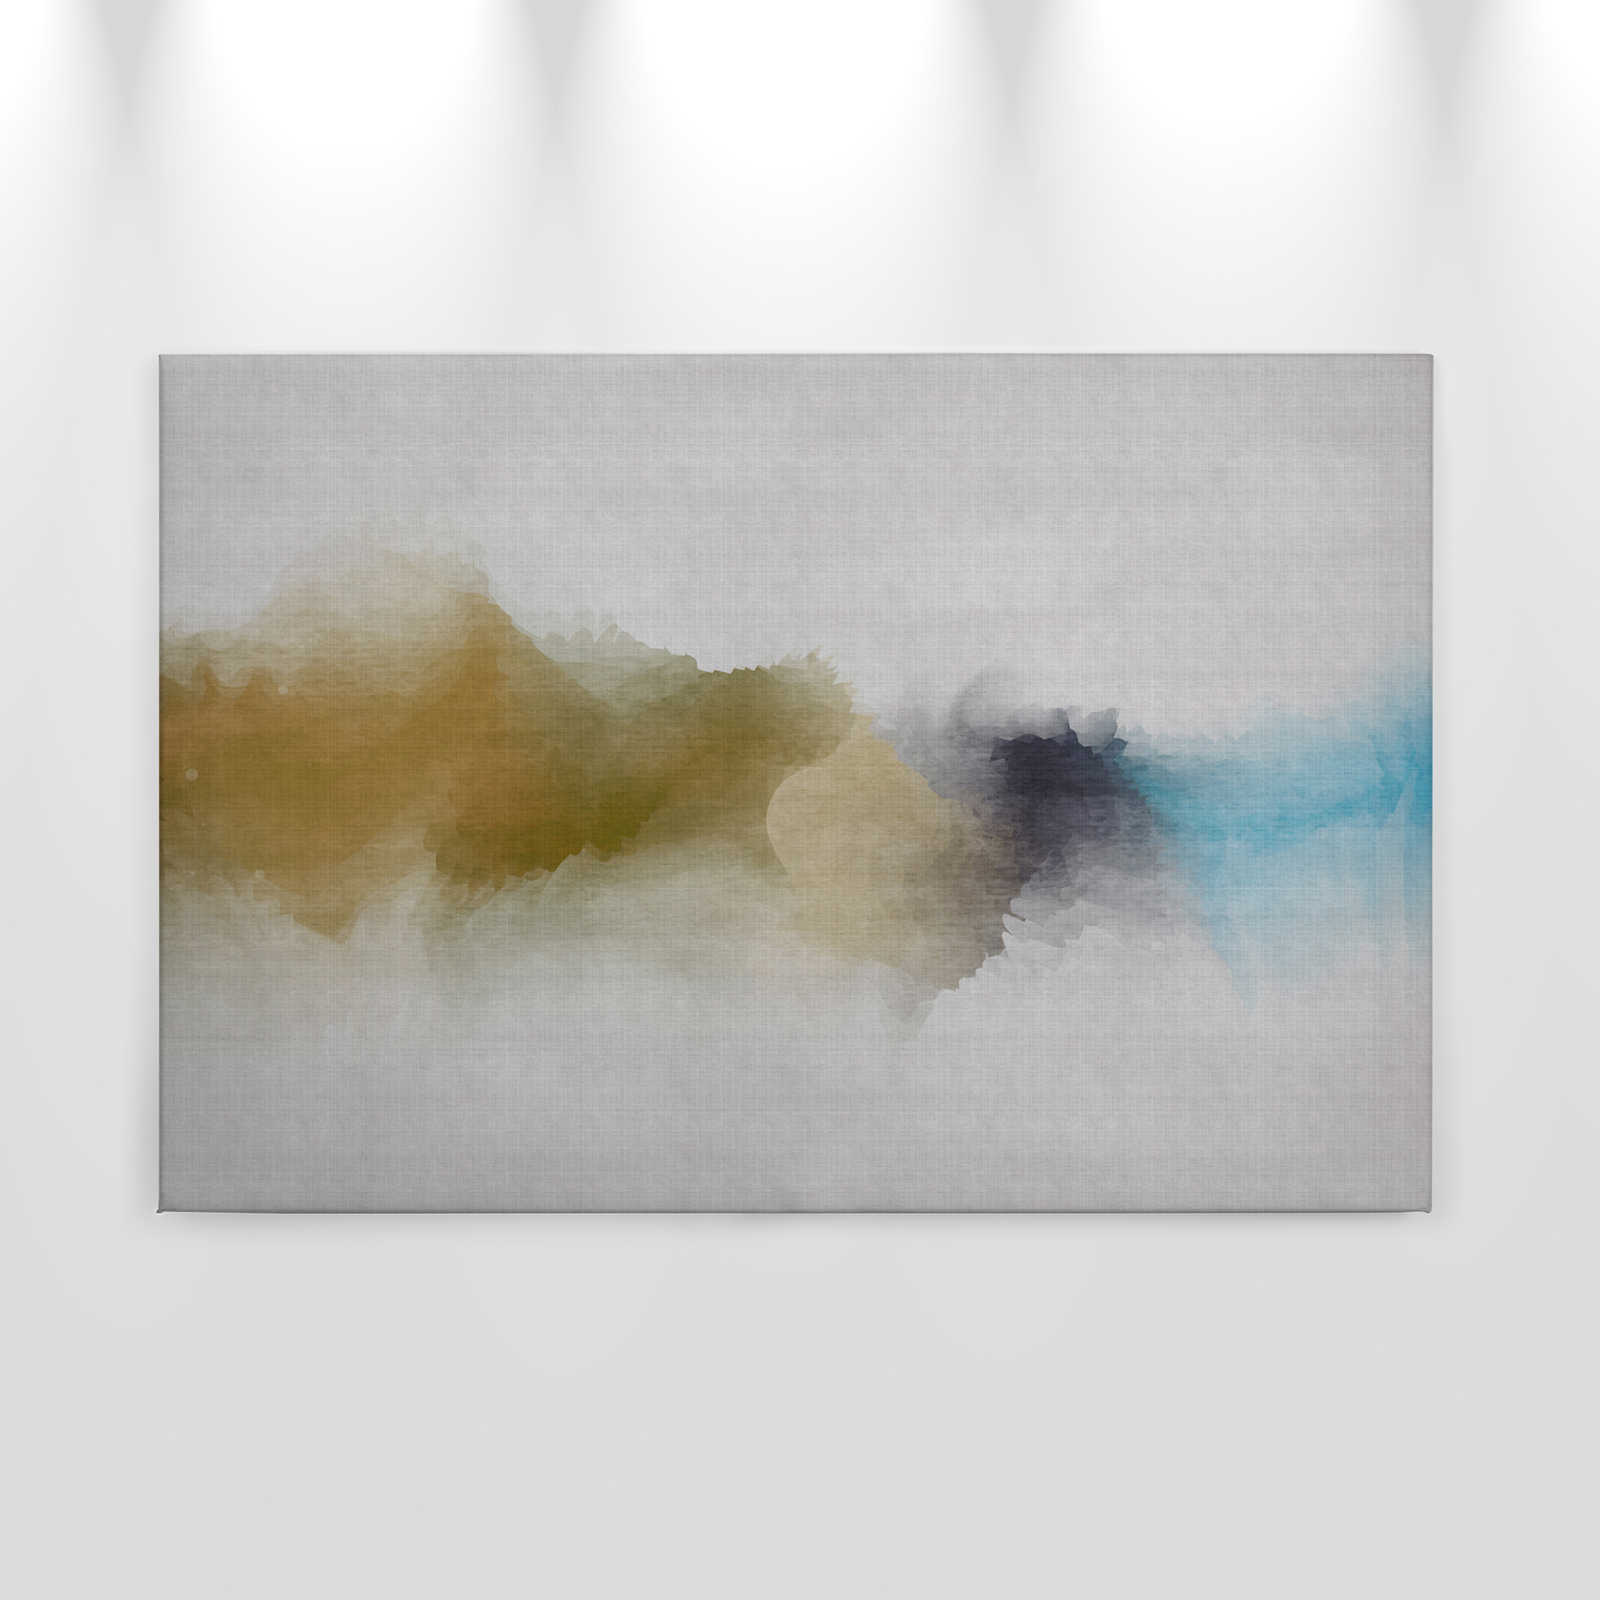             Daydream 3 - Leinwandbild wolkiges Aquarell-Muster- Naturleinen Struktur – 0,90 m x 0,60 m
        